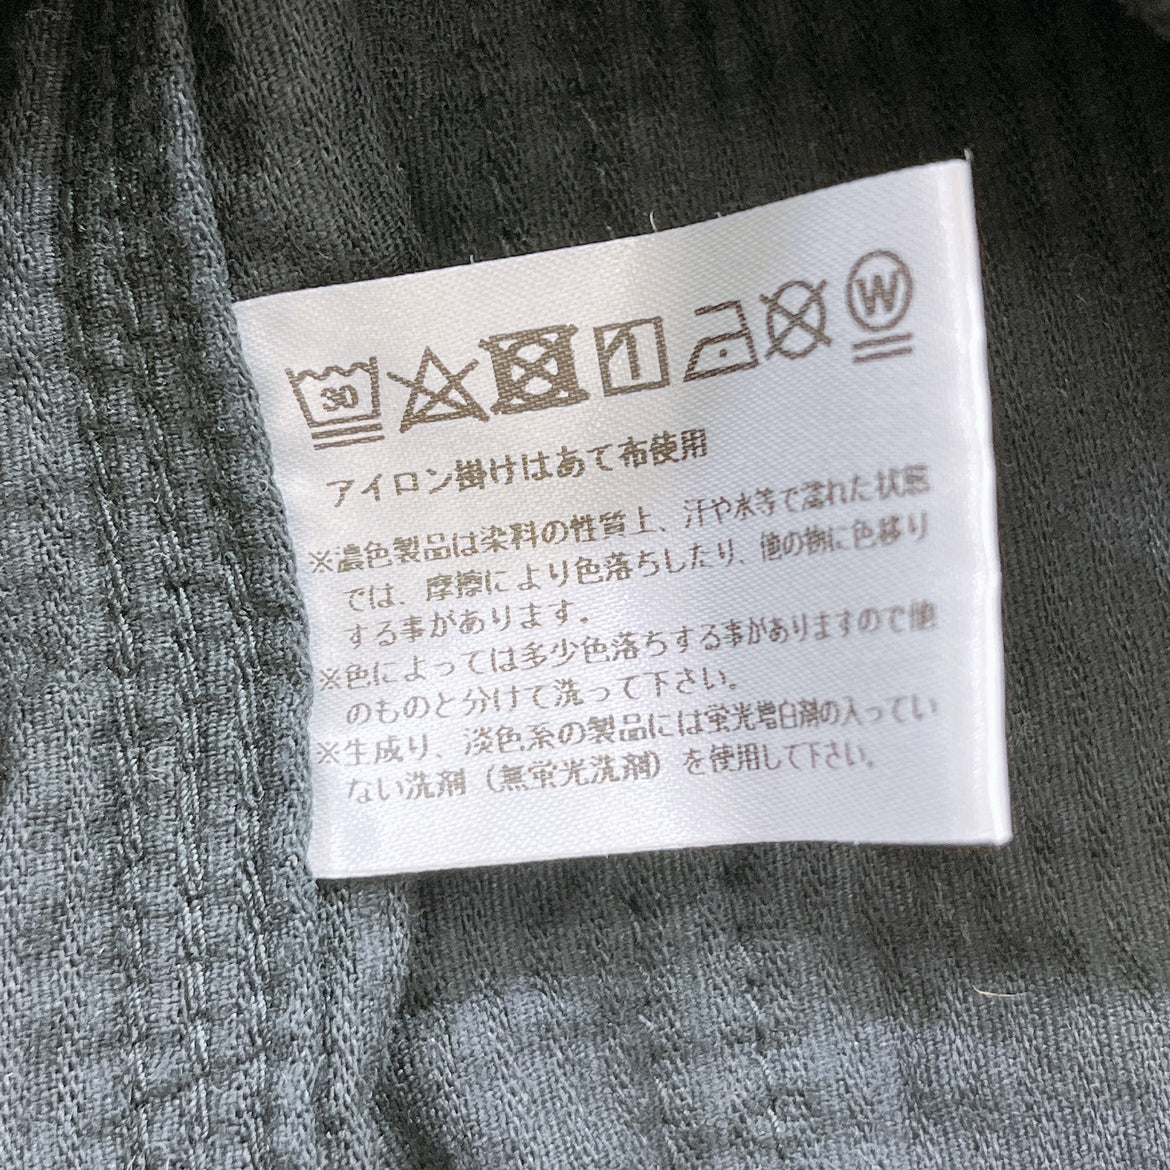 レディース1 S Barns ジャケット ブラック 黒 長袖 ポケット 襟付き ボタン シンプル 無地 日本製 バーンズ 【16017】